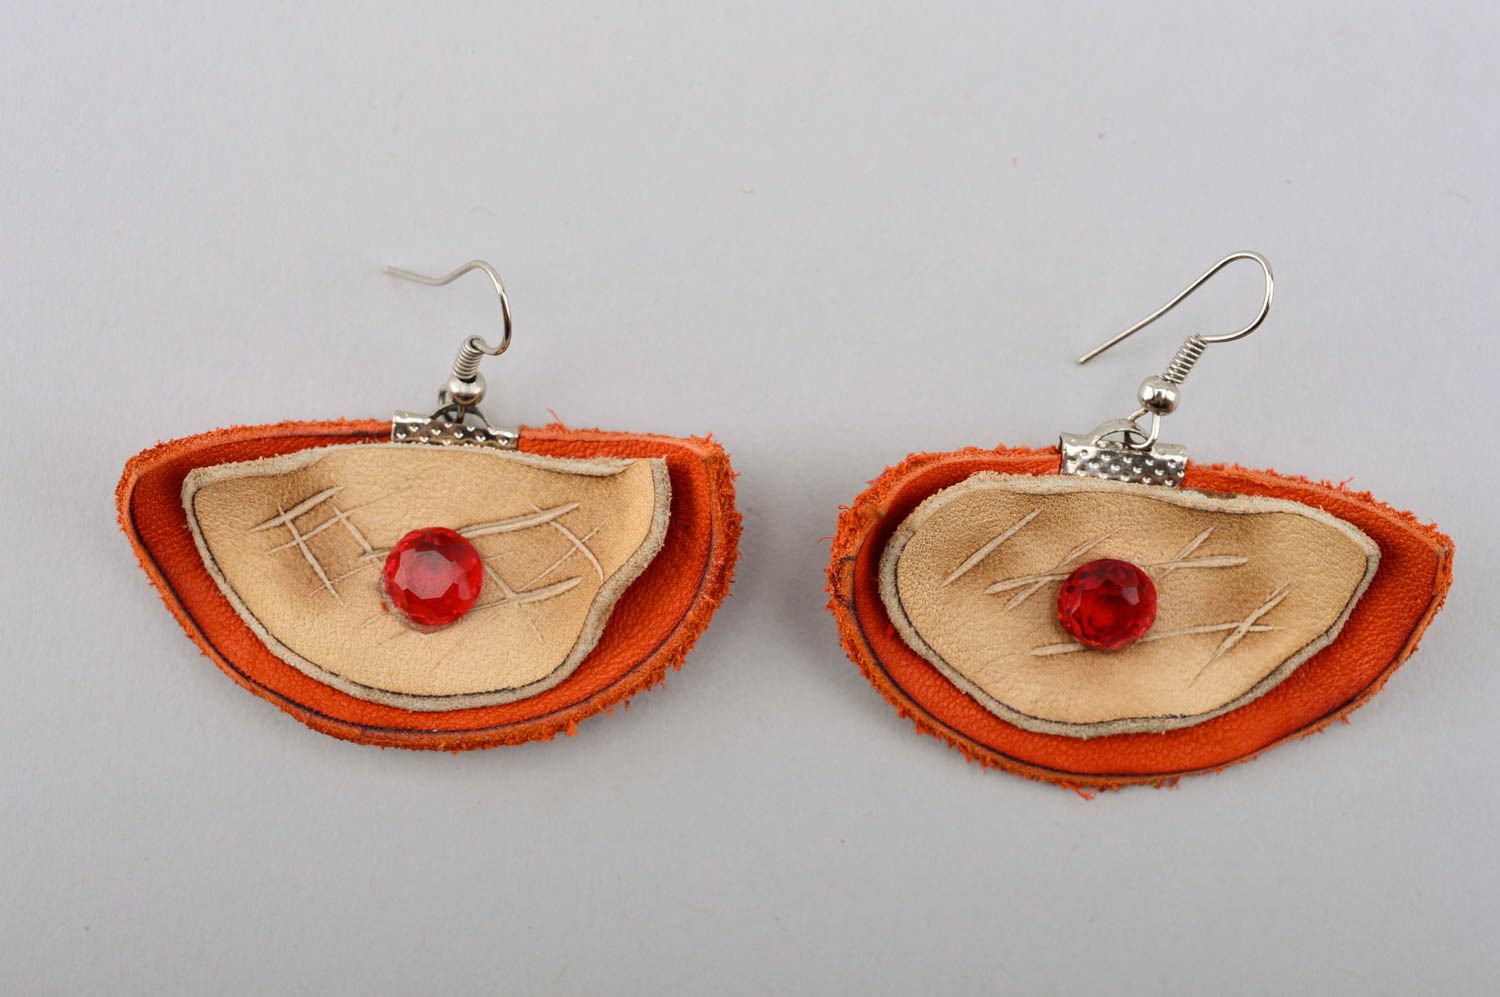 Handmade earrings leather earrings designer earrings unusual jewelry gift ideas photo 2